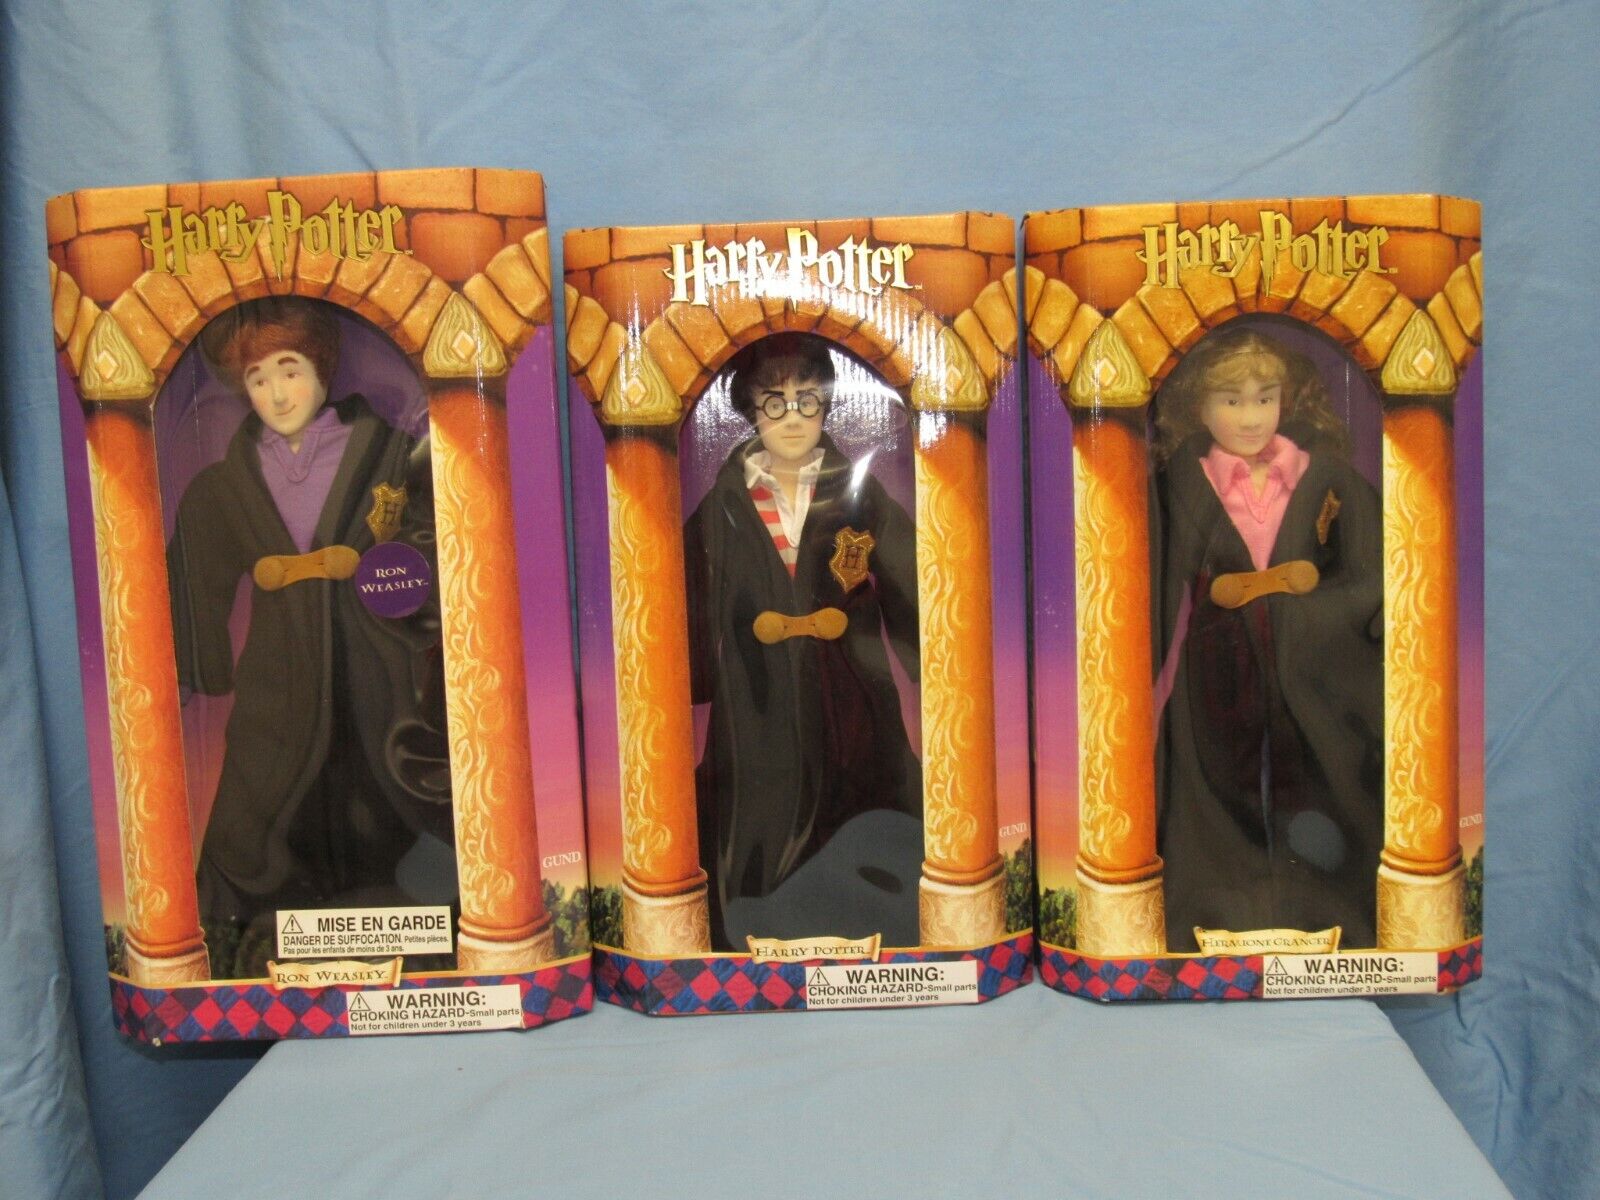 GUND brand Harry Potter, Ron Weasley, Hermione Granger plush dolls Gund